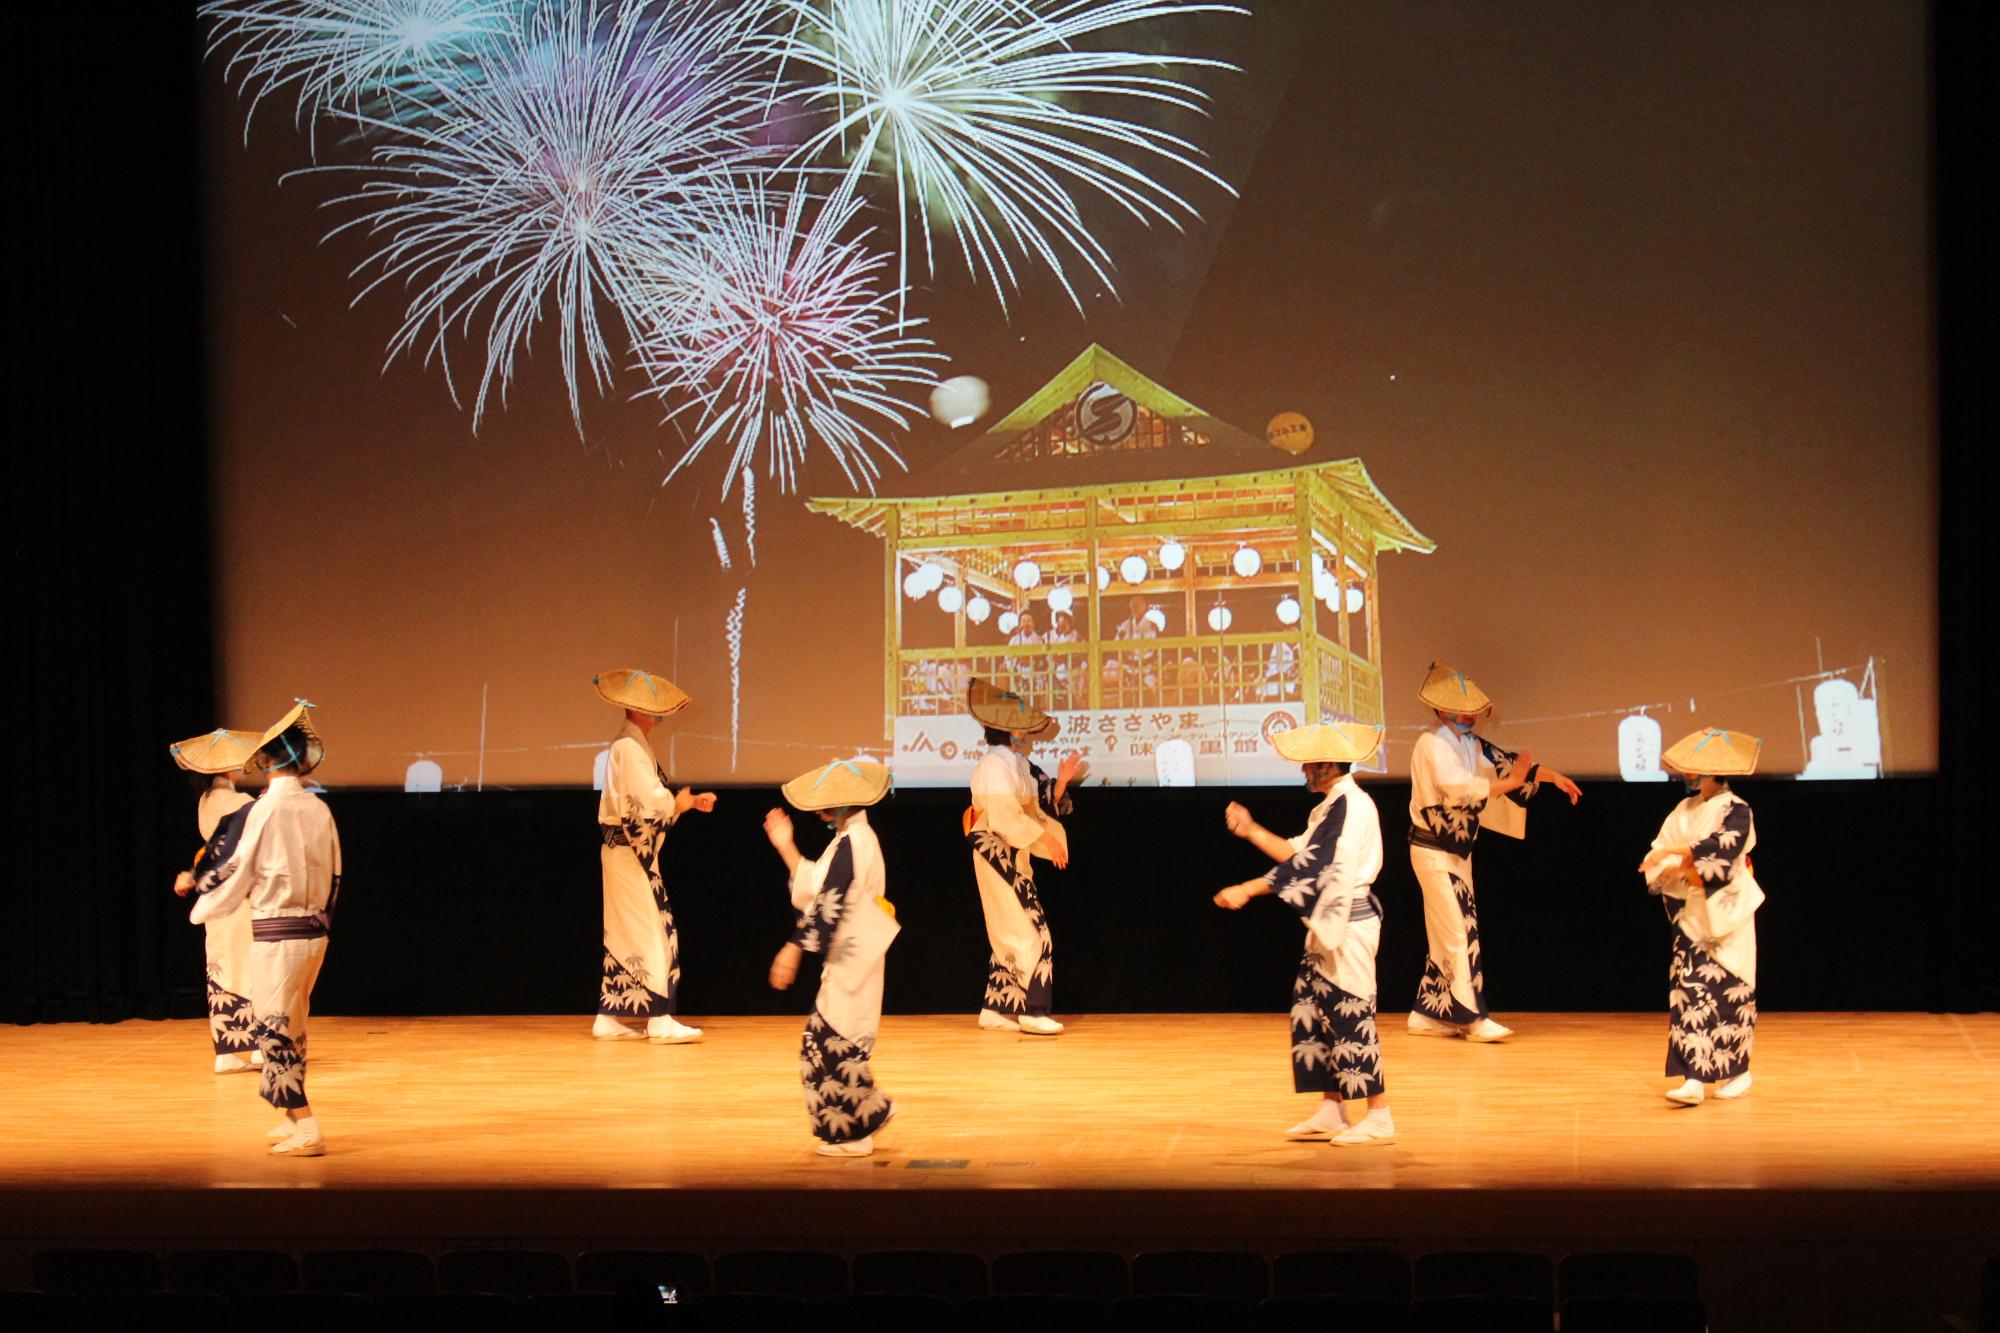 デカンショのやぐらと花火が上がっている景色をスクリーンに映し、7名が舞台で笹浴衣を着てデカンショ踊りを踊っている写真